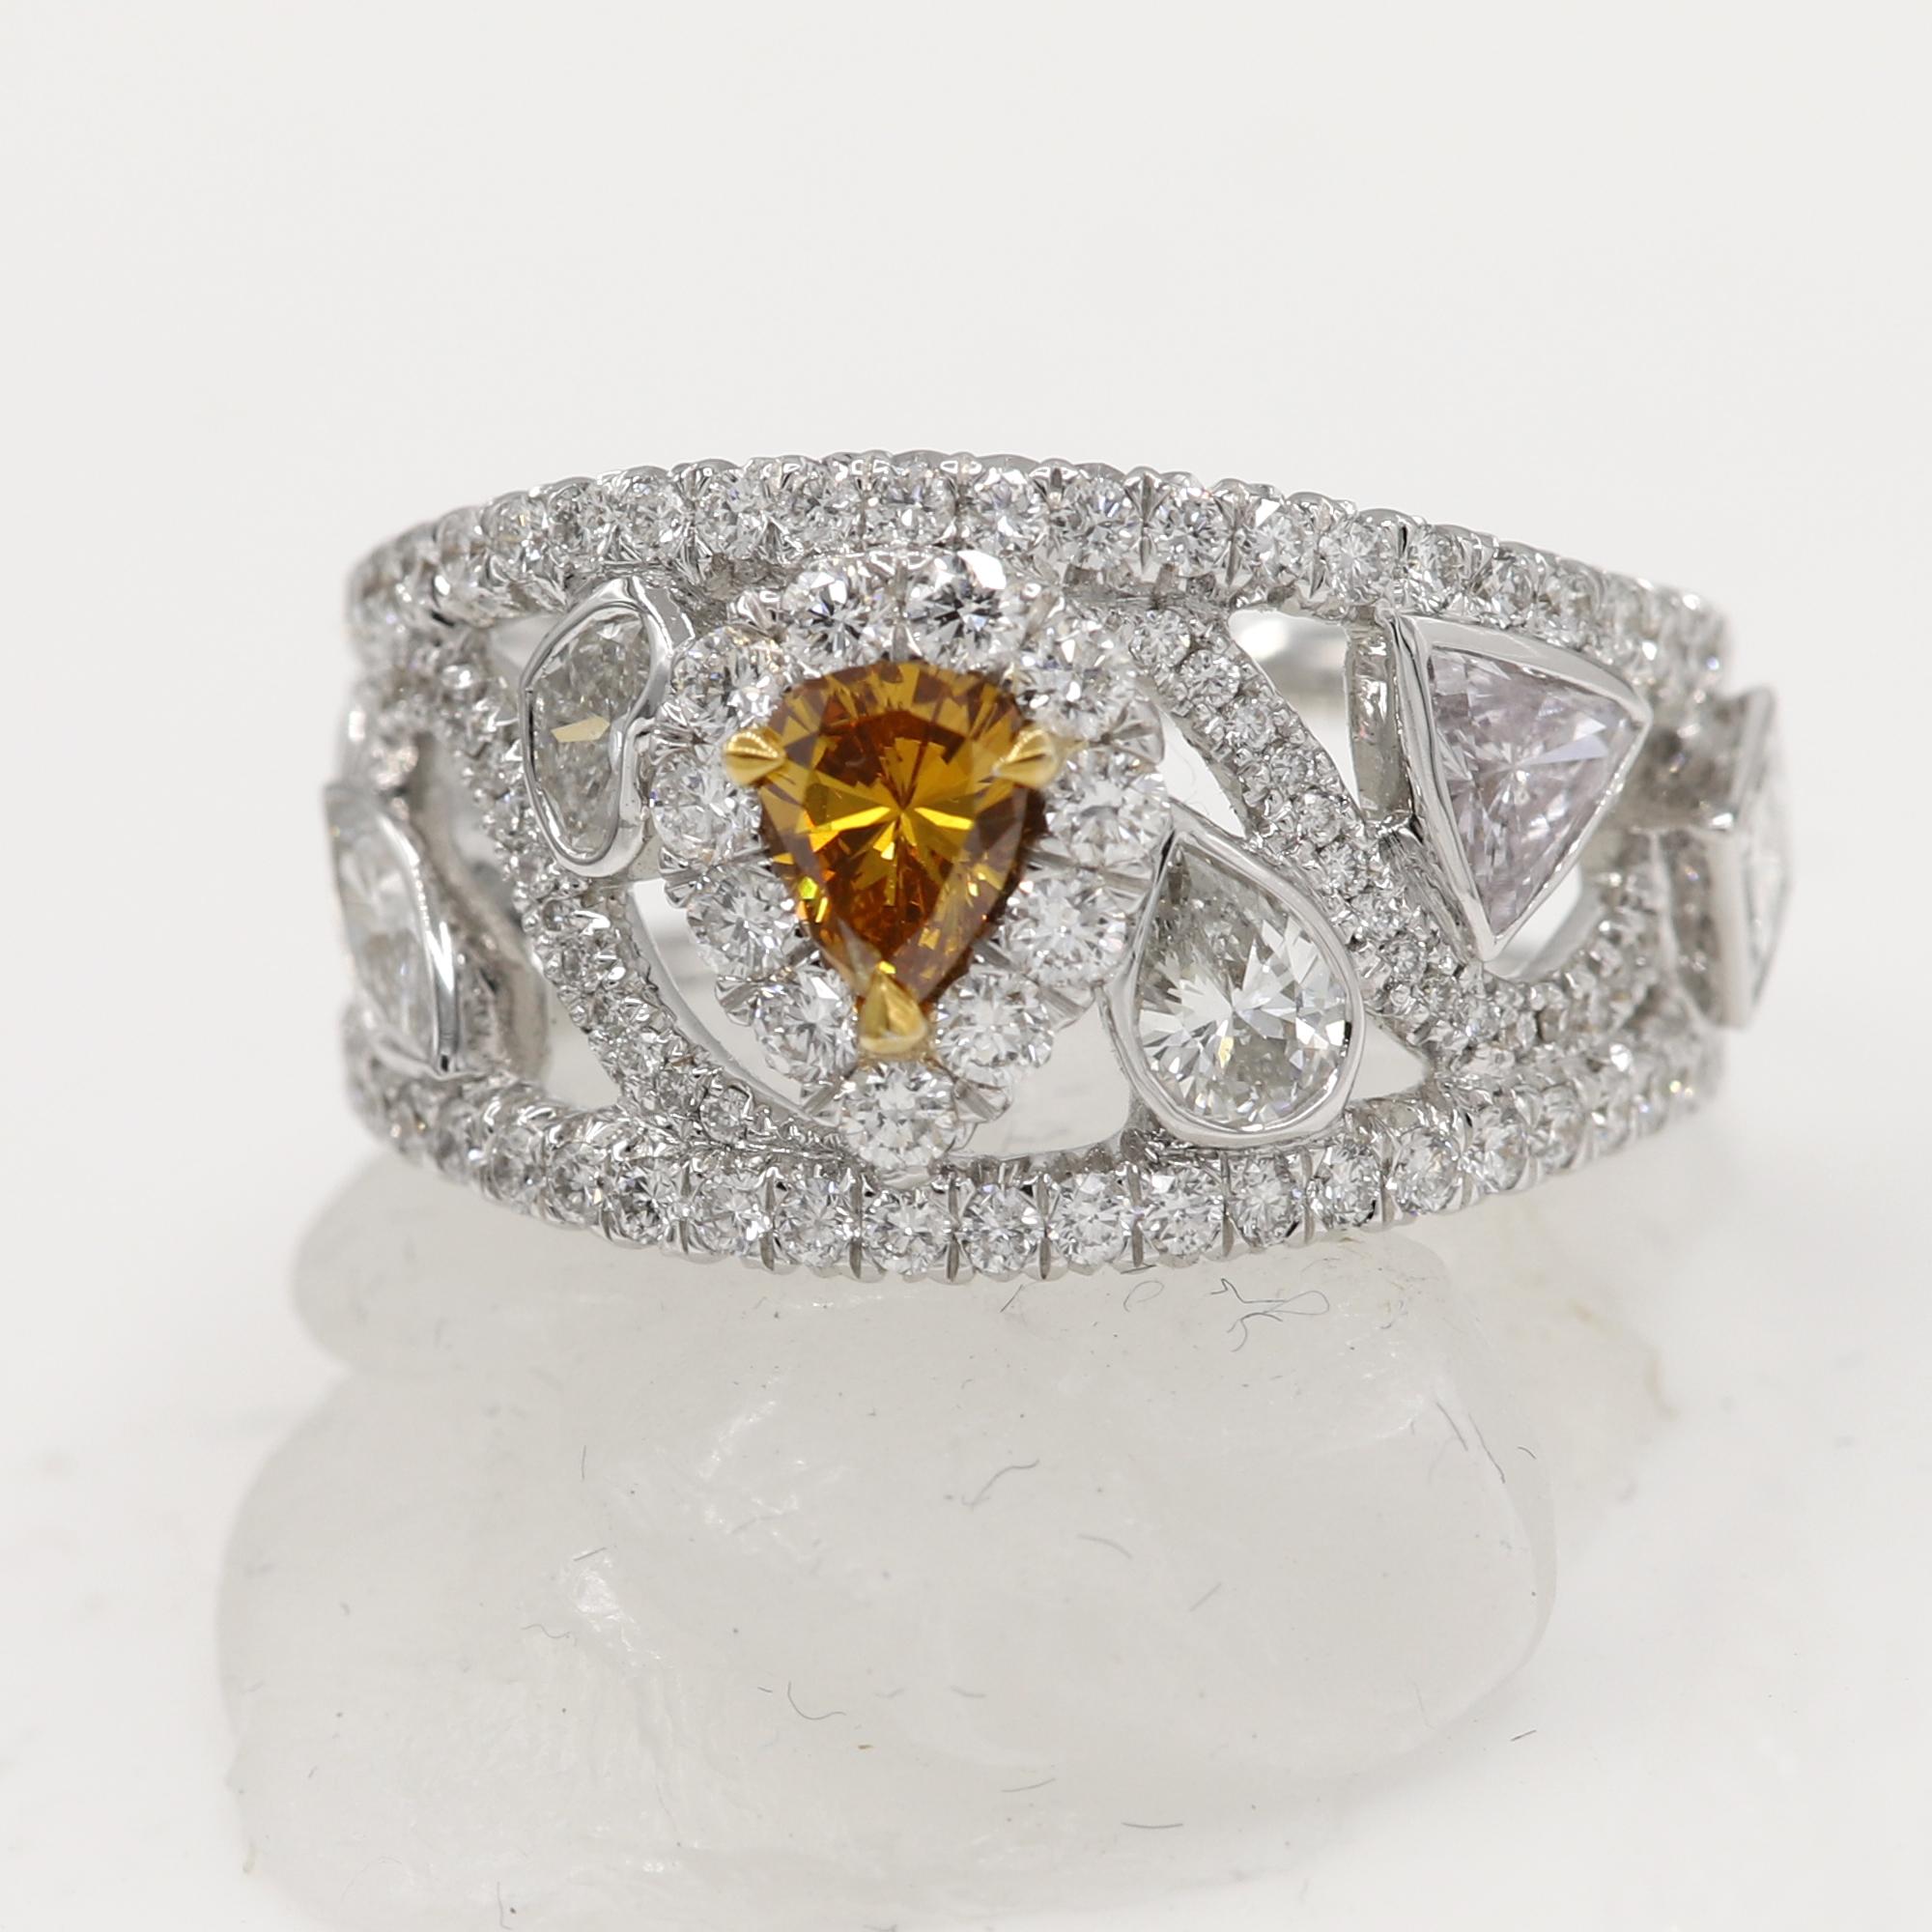 Mix Shape Diamond Ring Band, Birne Stein ist fancy Brown Color, alle anderen sind weiß.
18k Weißgold 7,0 Gramm.
Alle Diamanten zusammen 2,57 Karat (der Diamant in der Mitte ist 5x4 mm groß und hat 0,45 Karat) 
der Ring ist im oberen Bereich 12 mm